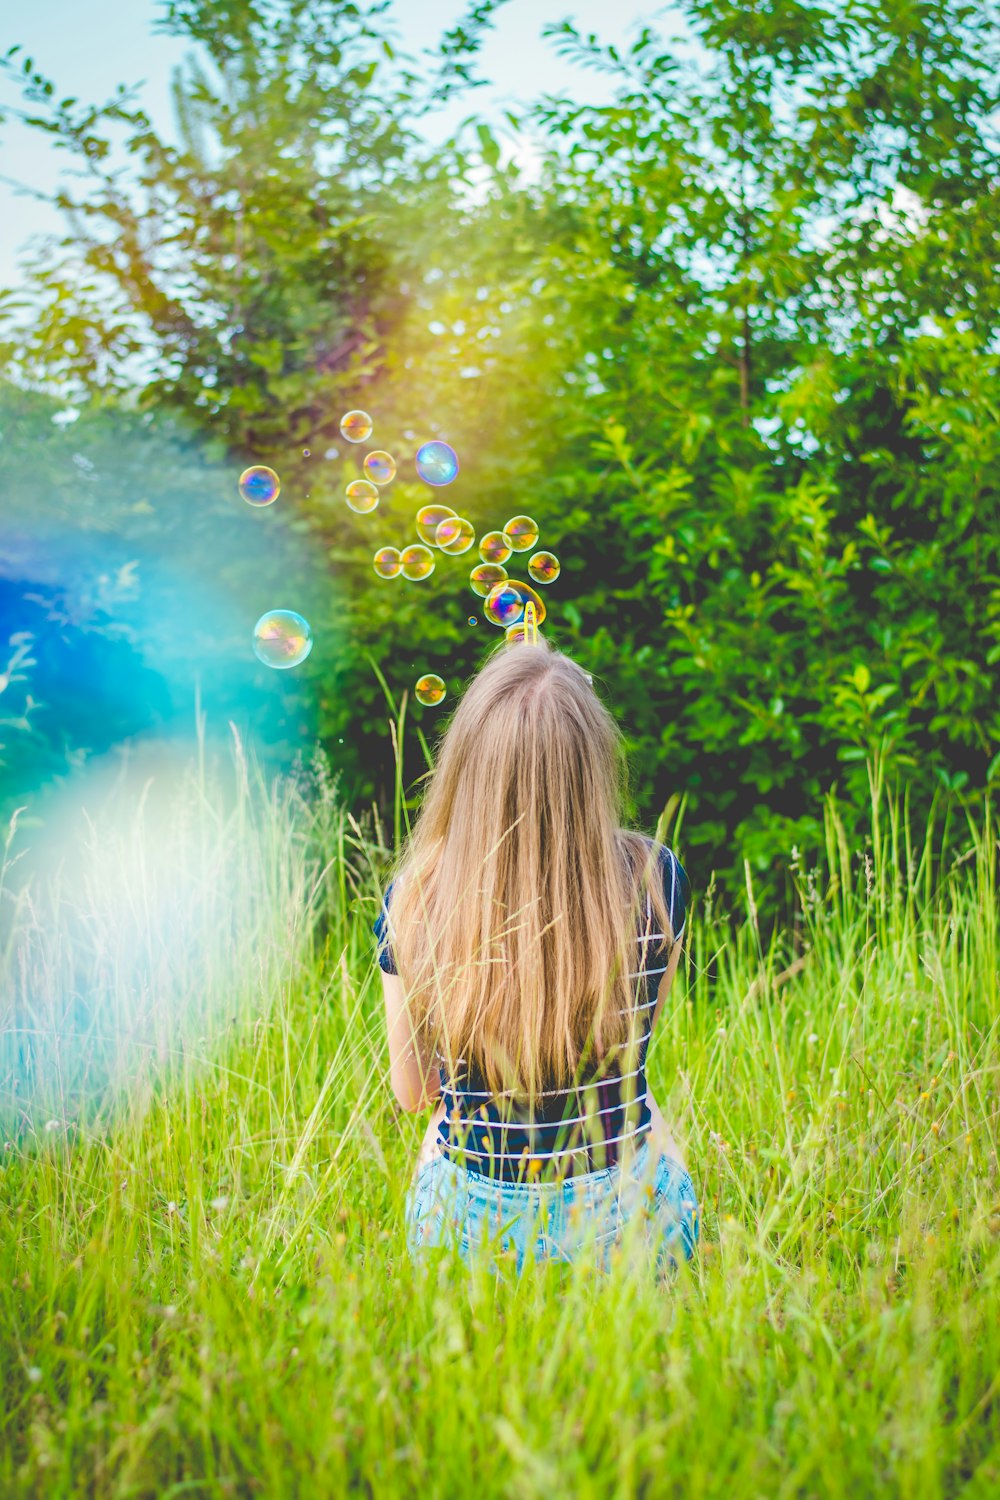 Mädchen, das tagsüber auf einem grünen Grasfeld in der Nähe von grünen Blattbäumen Blasen spielt